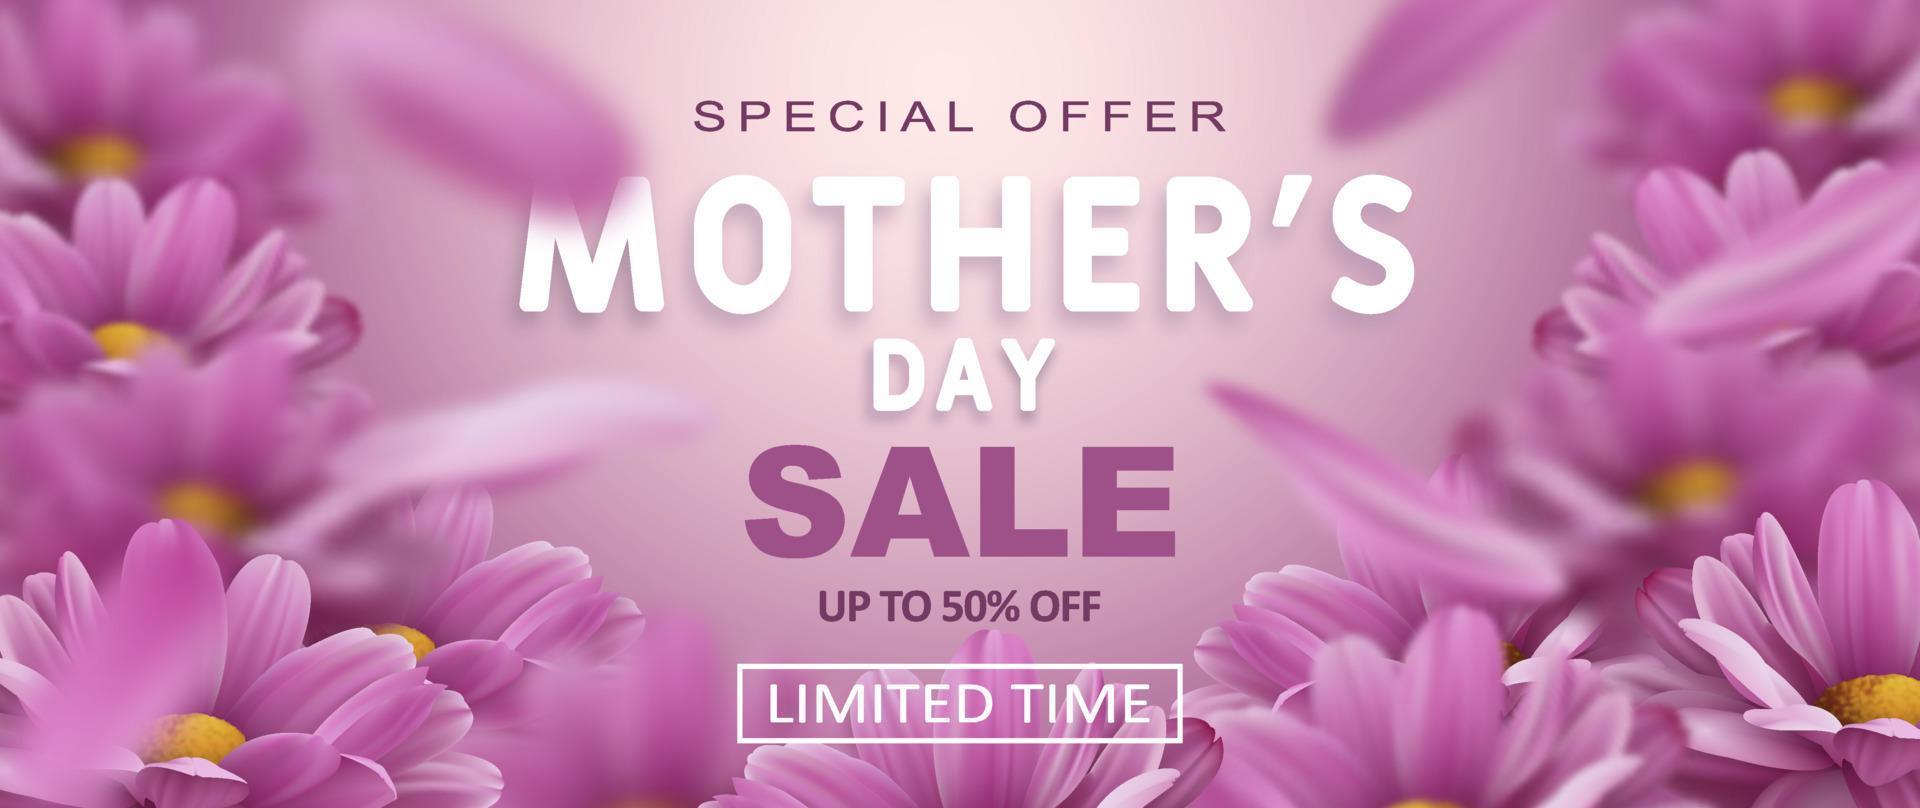 oferta especial. banner de venda do dia das mães com flores de crisântemo realistas e decoração de texto de desconto de publicidade. ilustração vetorial vetor